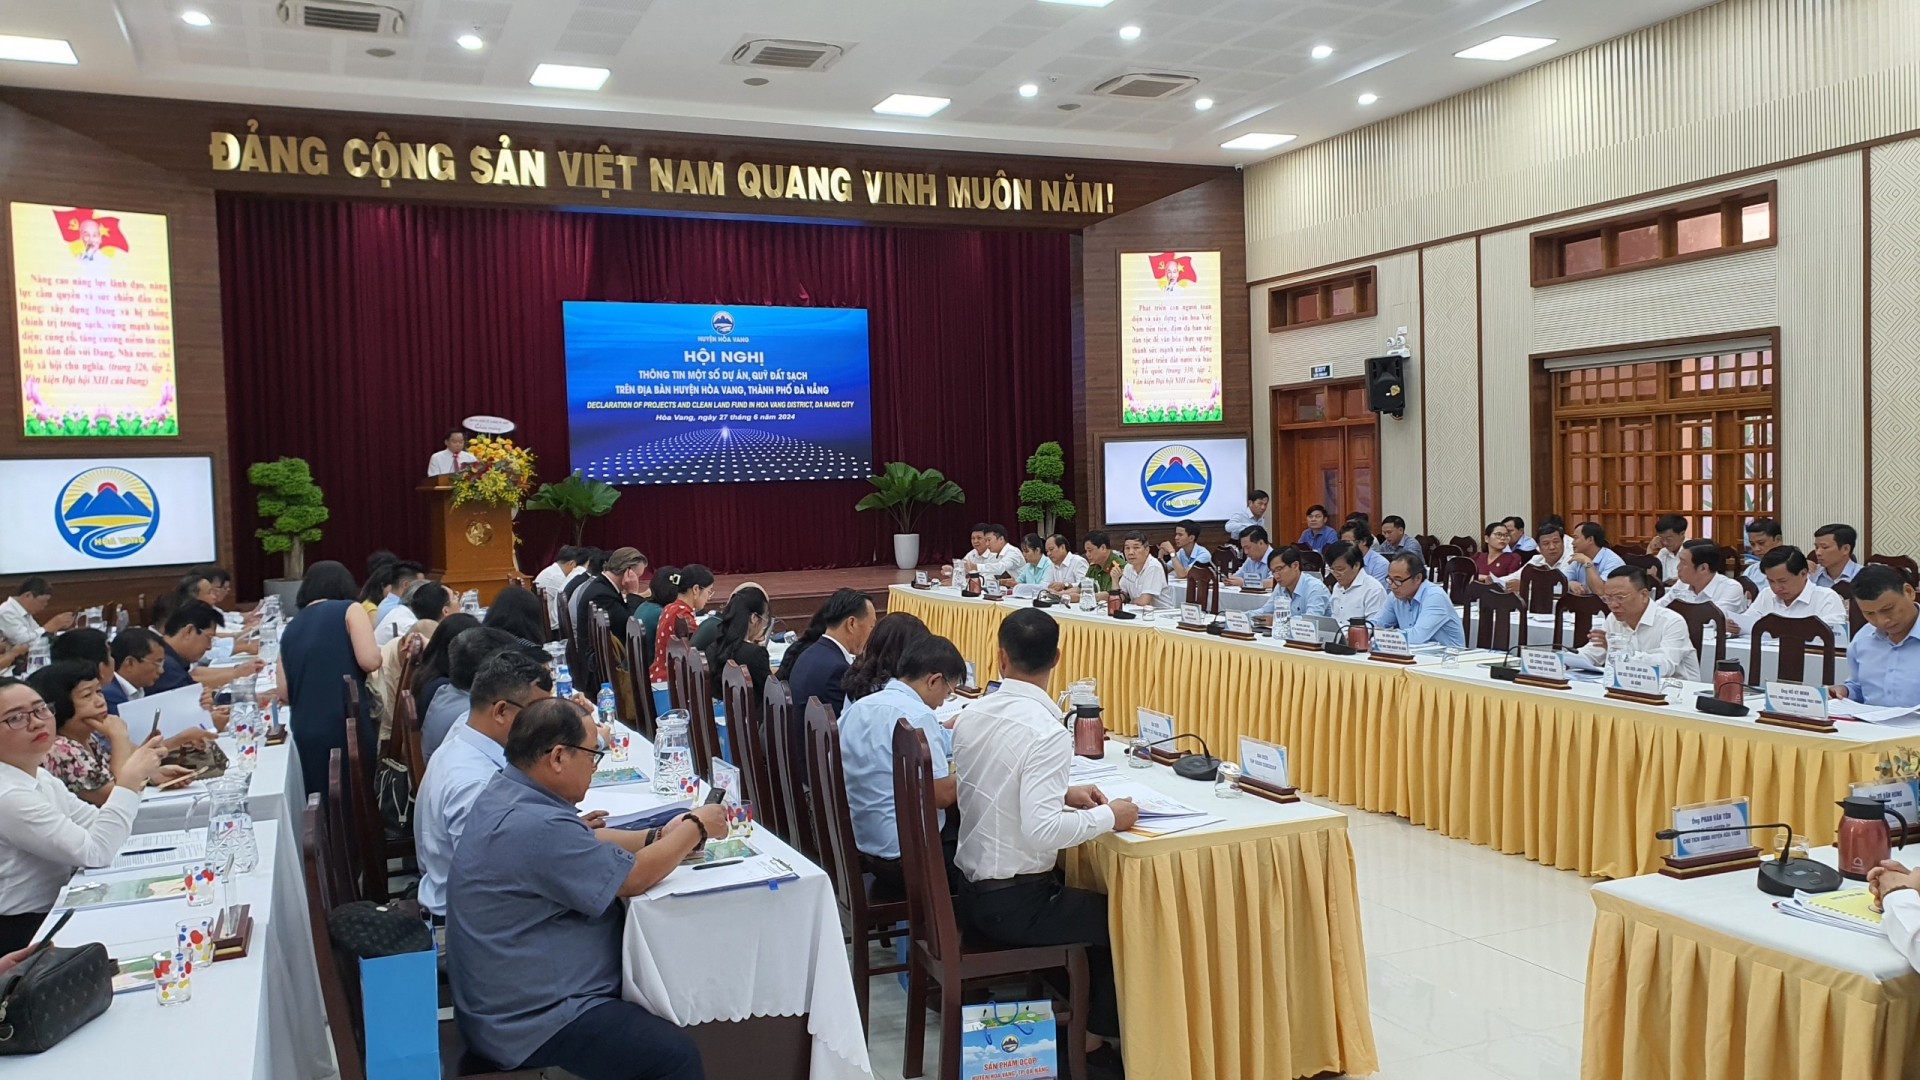 Ngày 27/6, UBND huyện Hòa Vang phối hợp với Ban xúc tiến và Hỗ trợ thành phố tổ chức Hội nghị Thông tin một số dự án, quỹ đất sạch trên địa bàn huyện Hòa Vang.